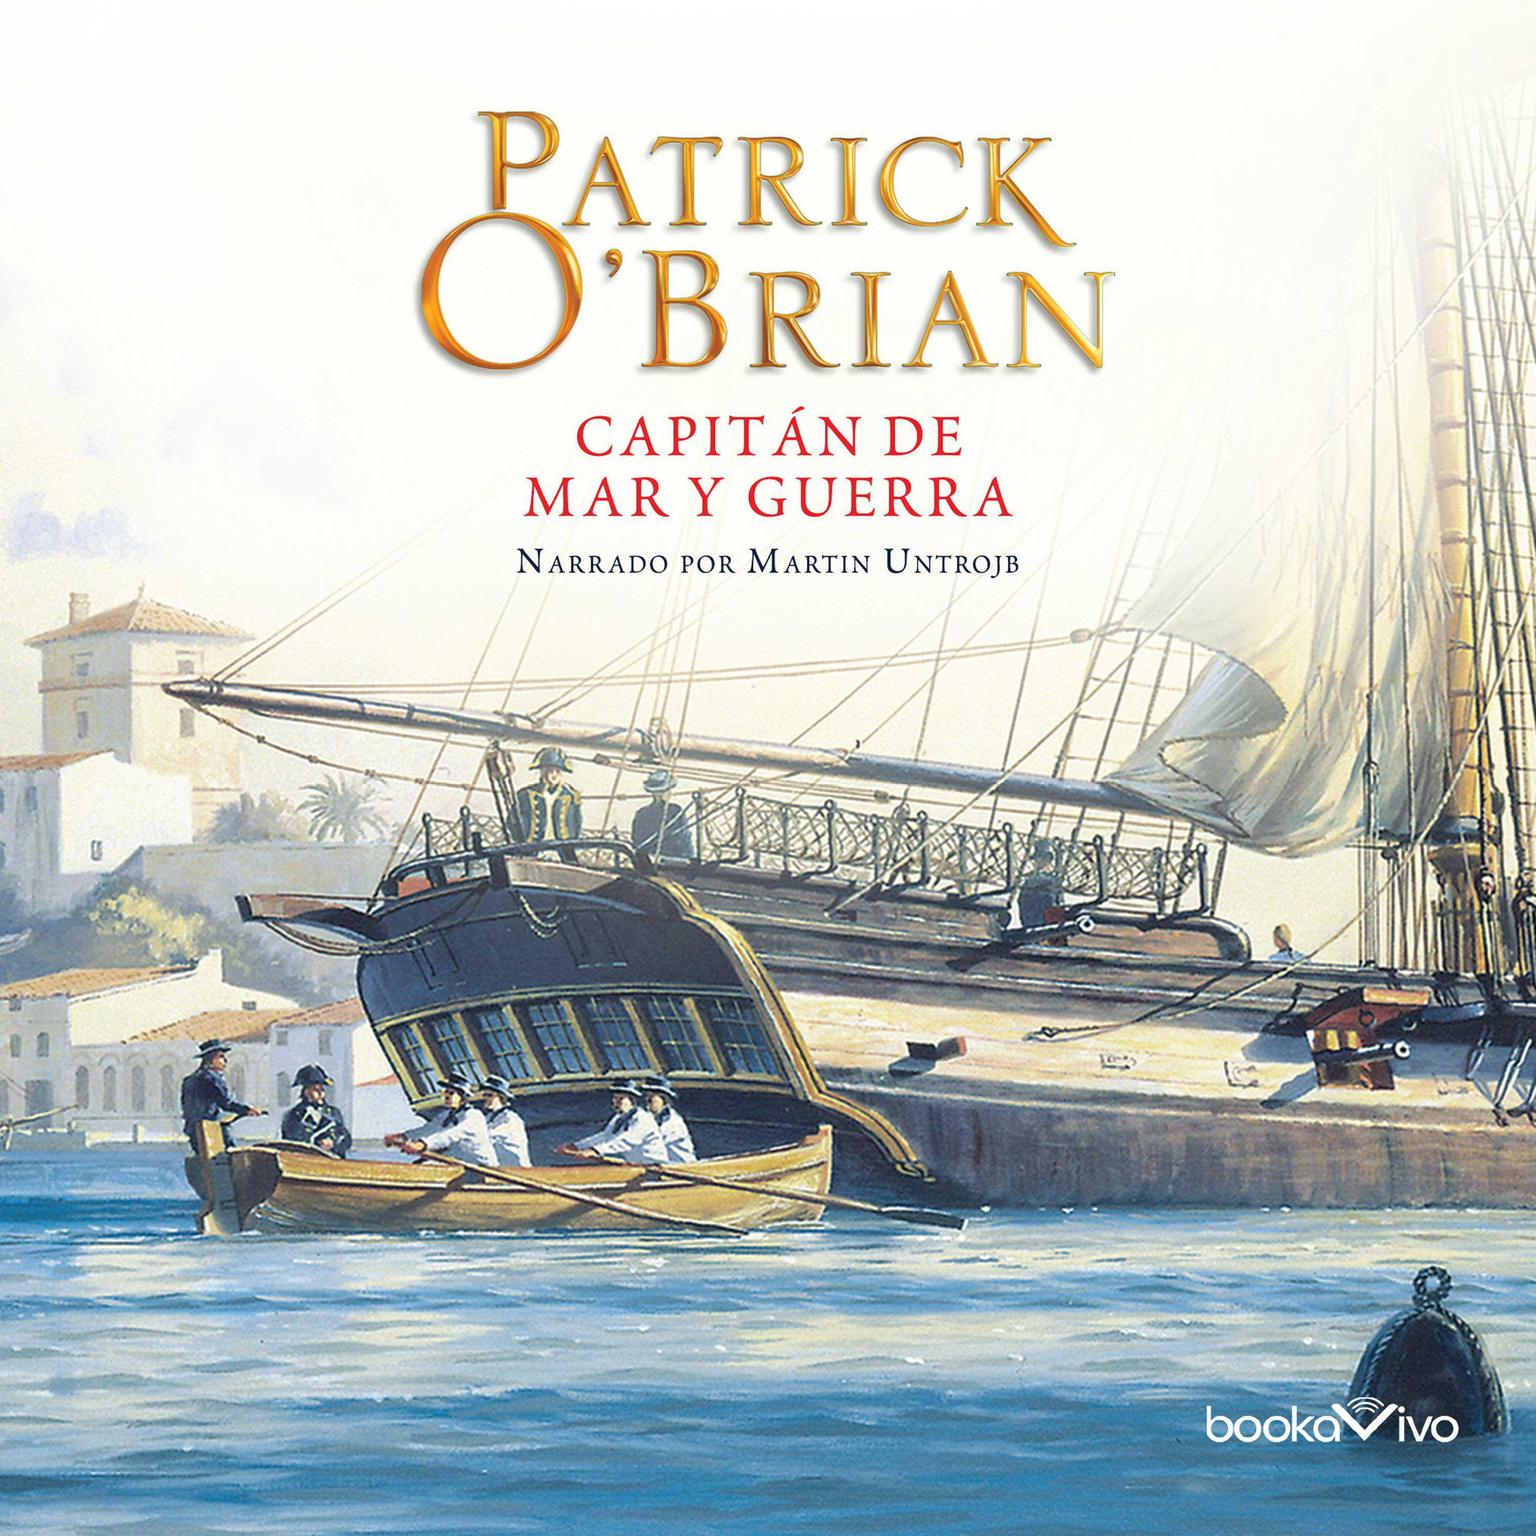 Capitán de mar y guerra (Master and Commander) Audiobook, by Patrick O'Brian